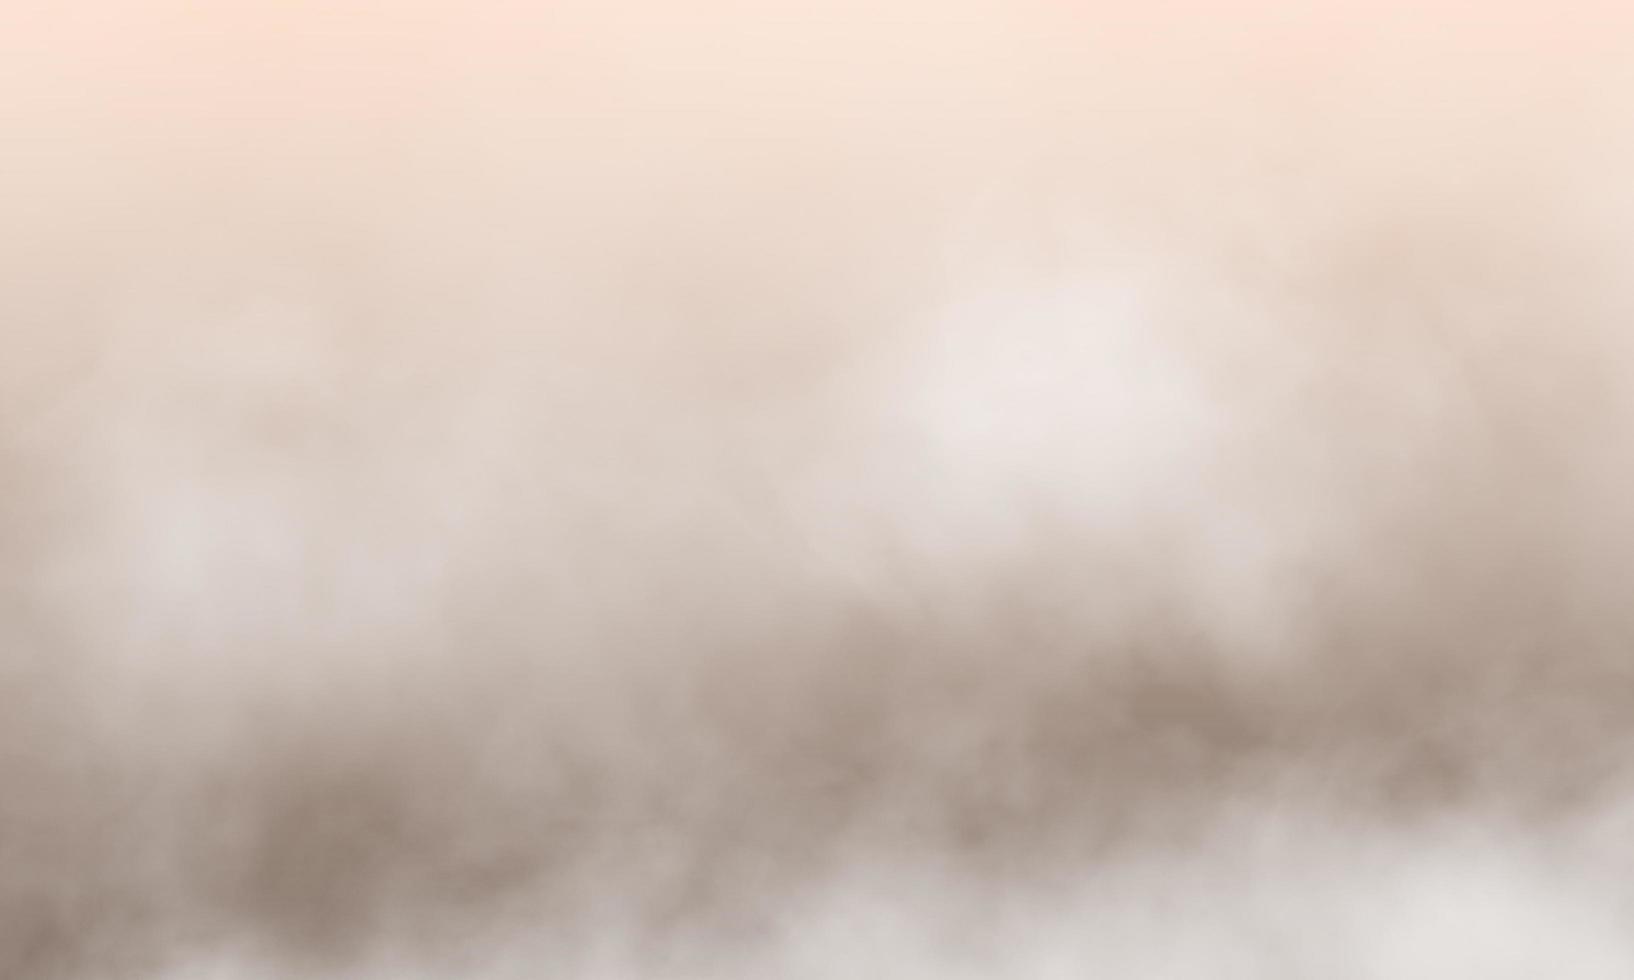 puderrosa nebel oder rauchfarbe isolierter hintergrund für wirkung. foto